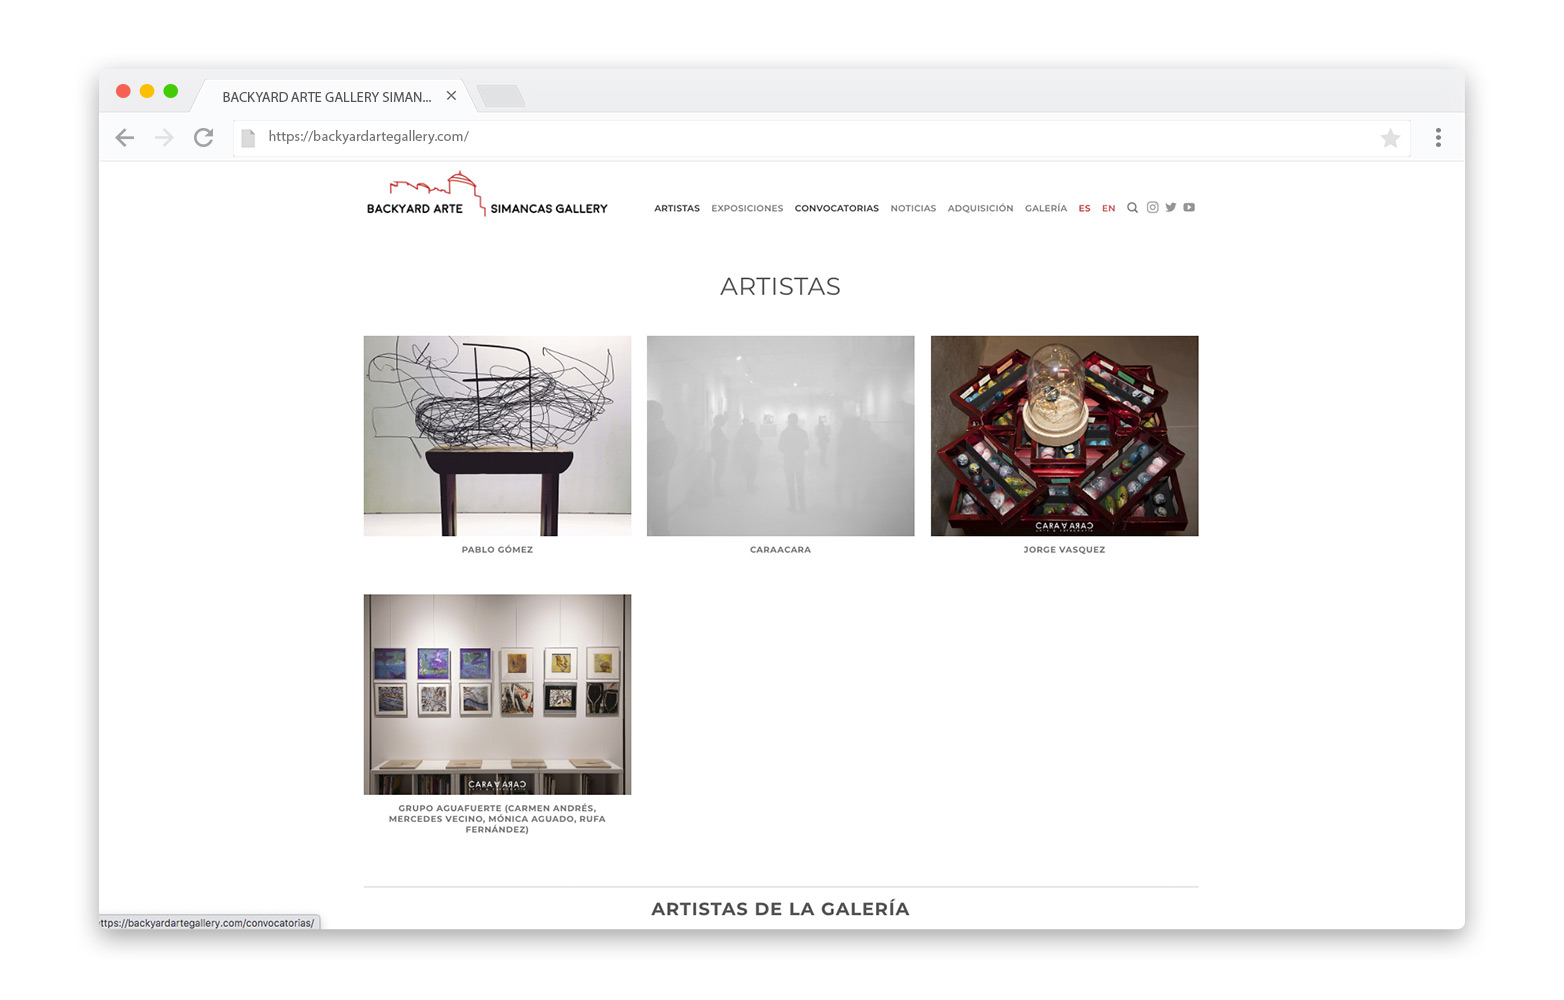 Diseño web Valladolid - BACKYARD ARTE SIMANCAS GALLERY